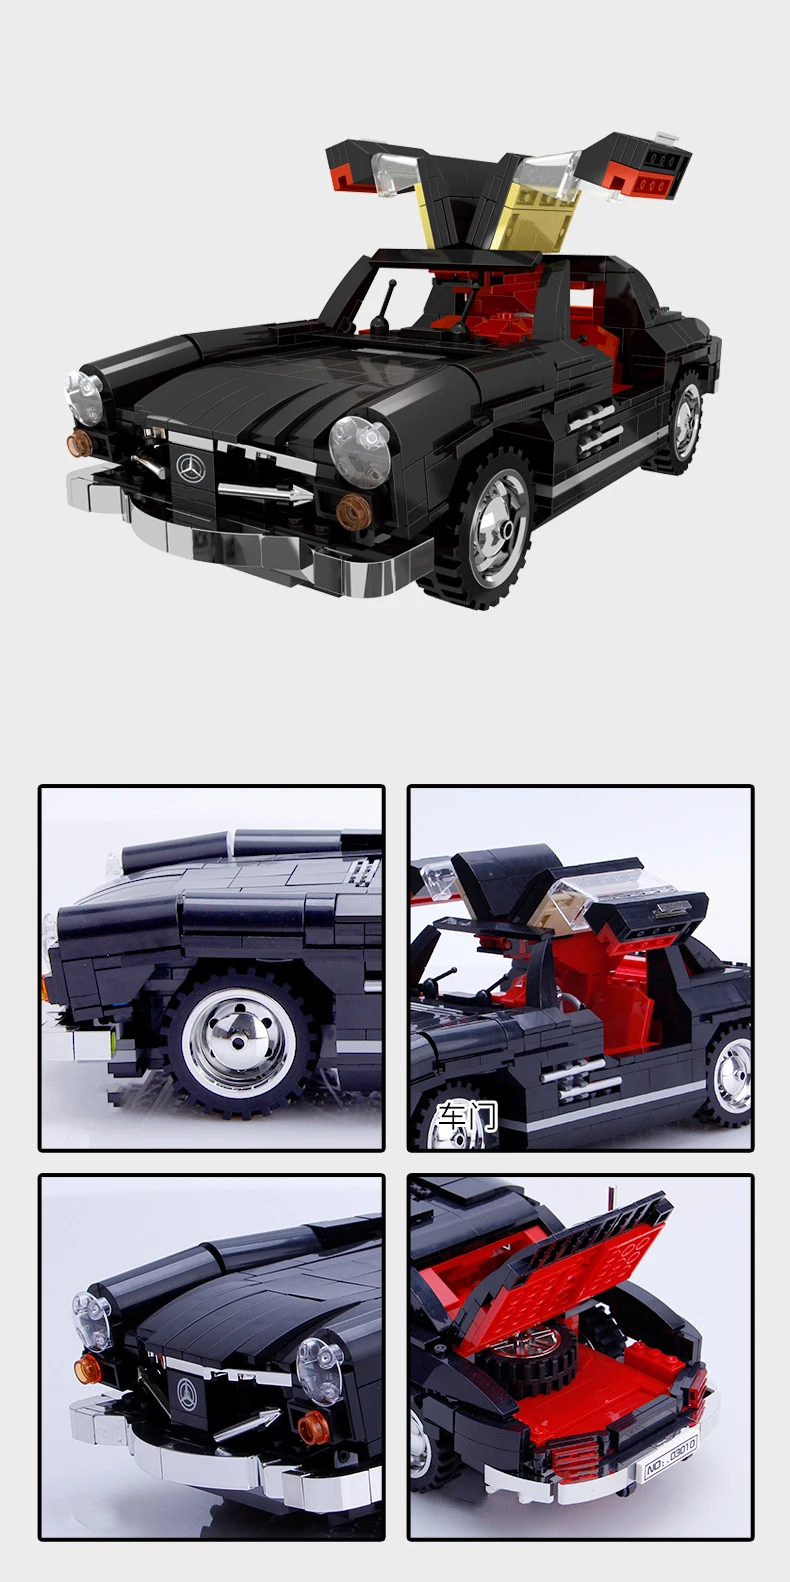 Строительные блоки, совместимый бренд, 825 шт., серия Technic Photpong, модель супер гоночного автомобиля, MOC Creator, кирпичи, игрушки для взрослых, подарки